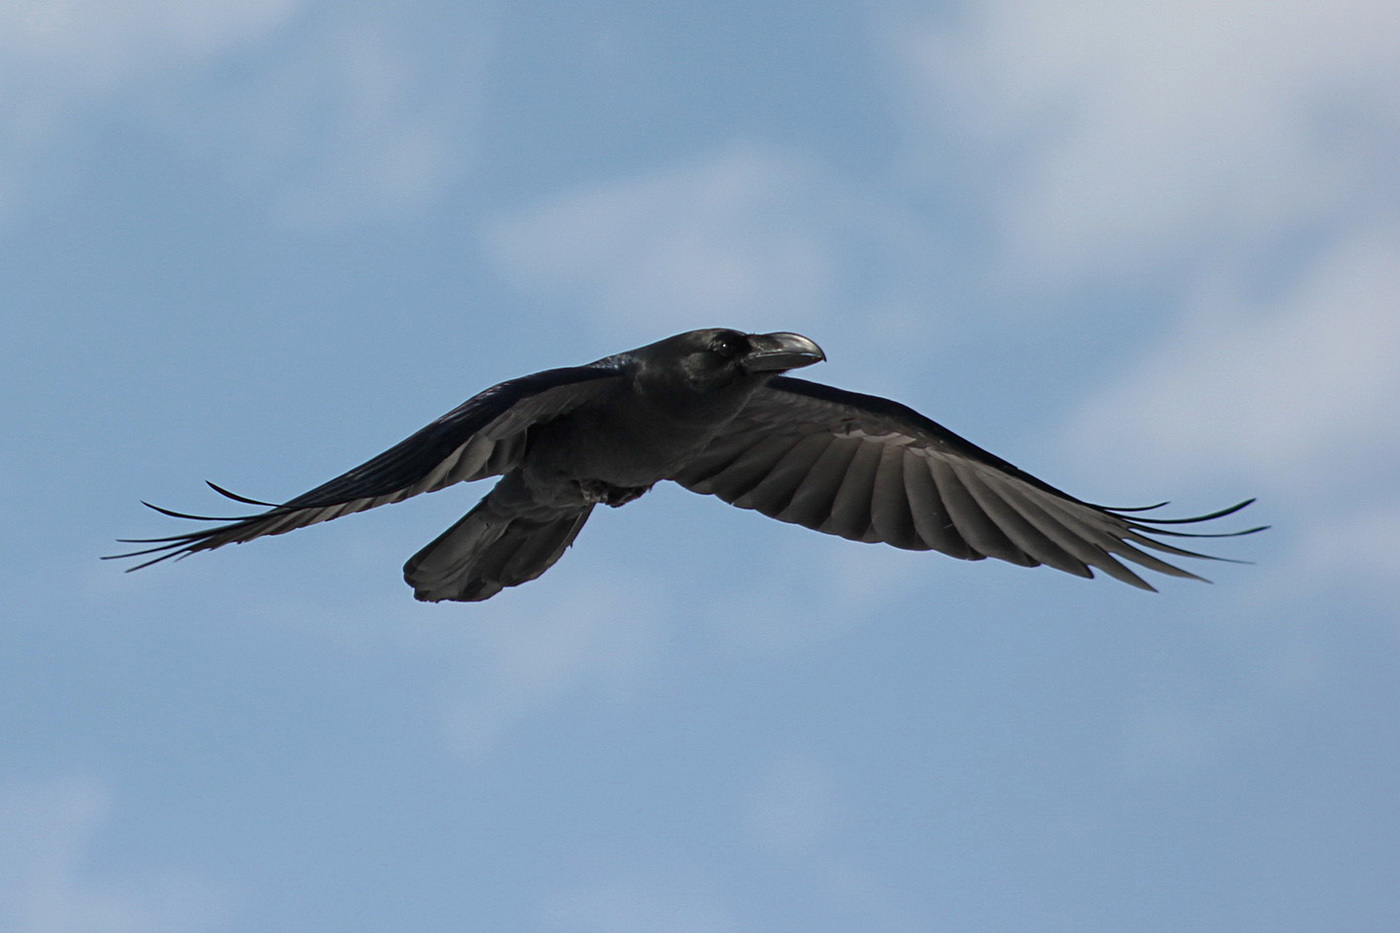 Raven repülés közben